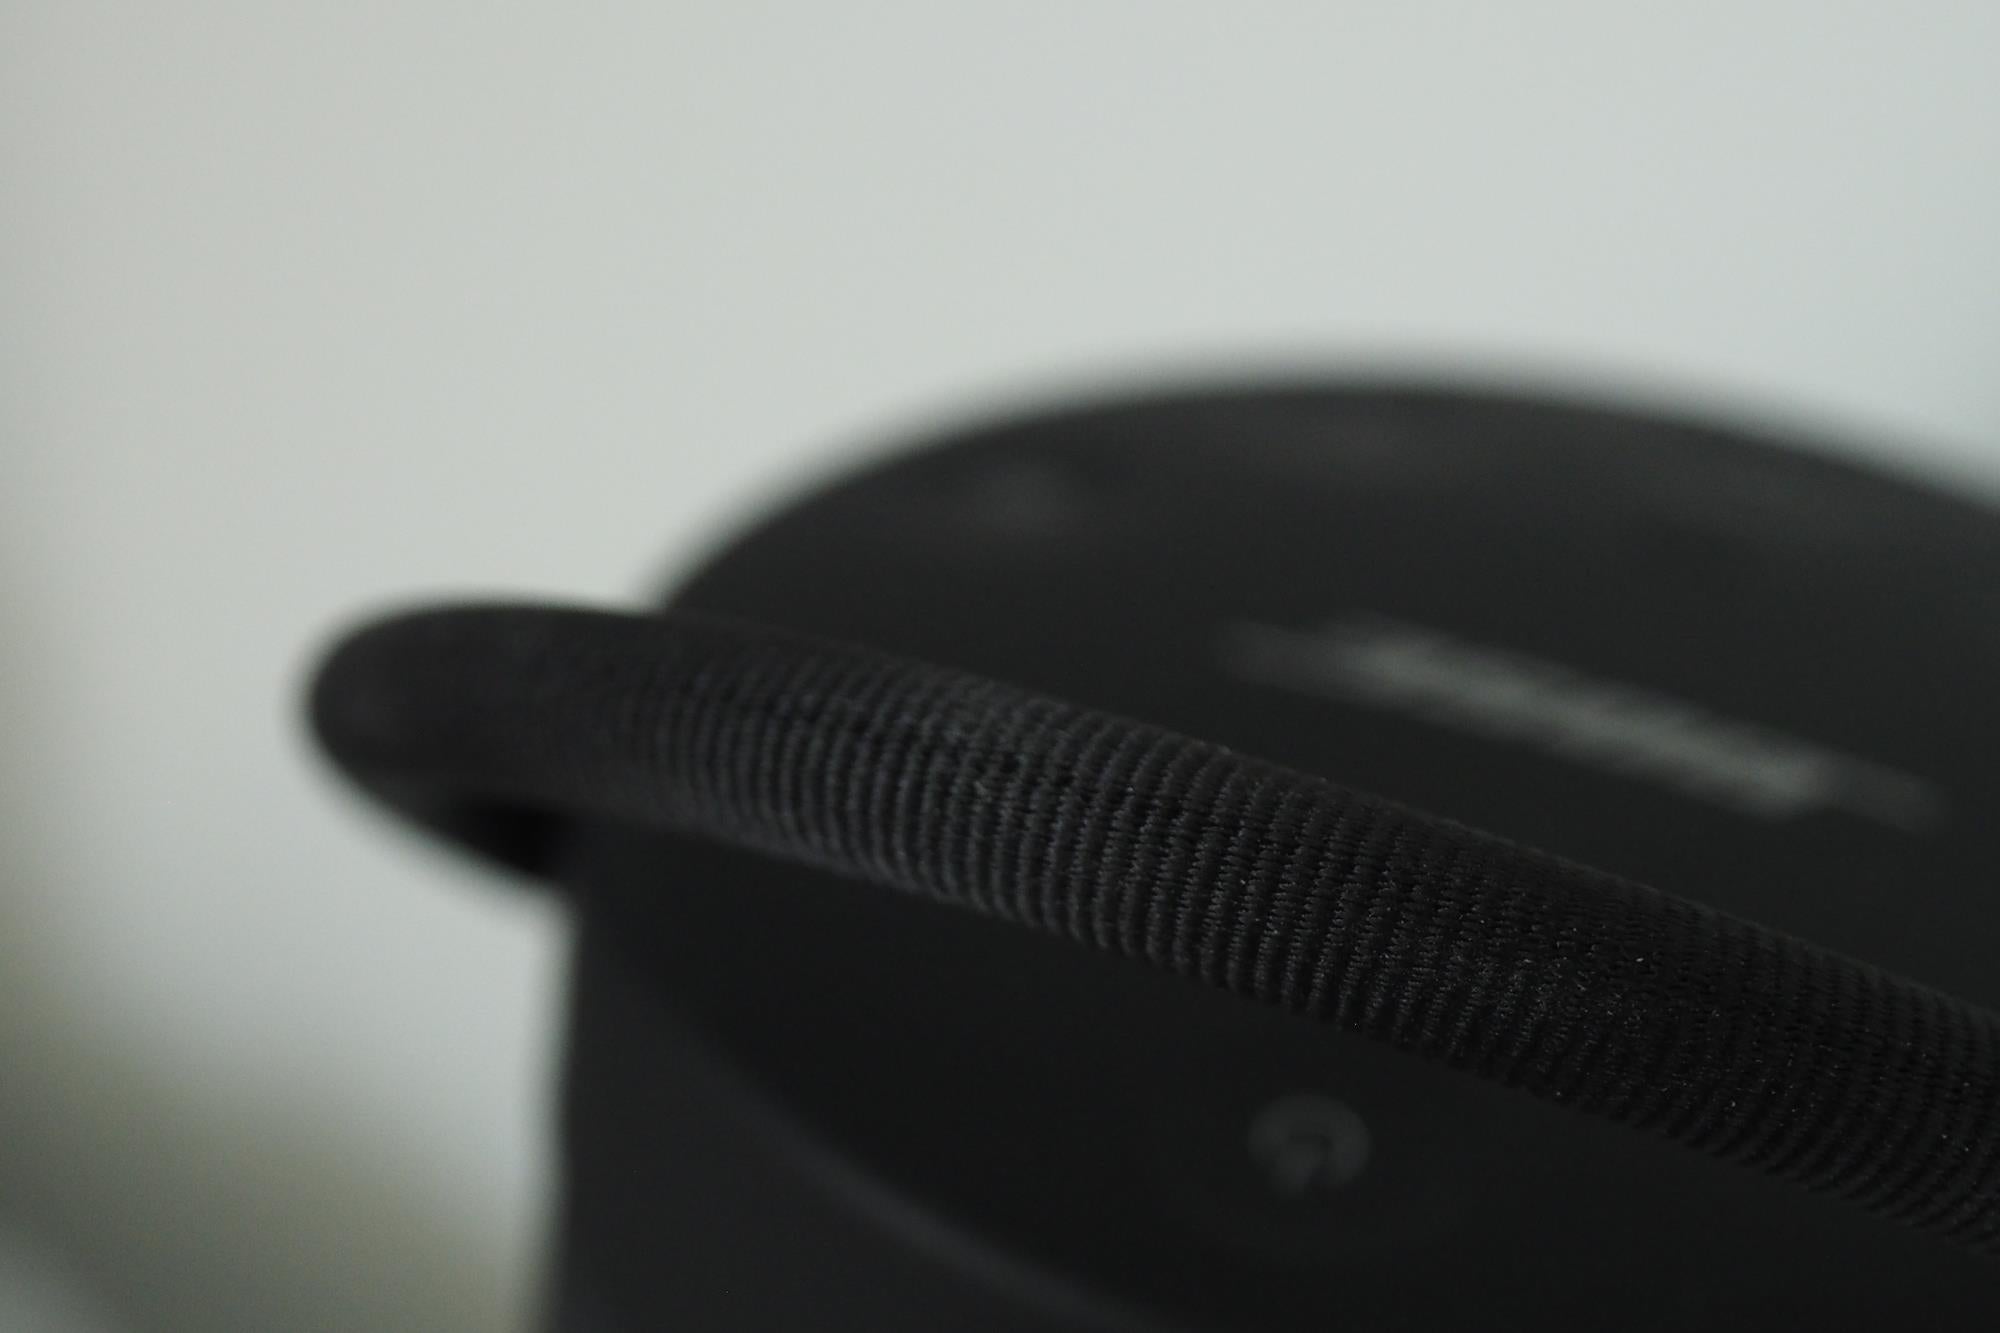 Close-up of Bose SoundLink Revolve+ speaker handle detail.Bose SoundLink Revolve+ speaker next to vintage cameras.